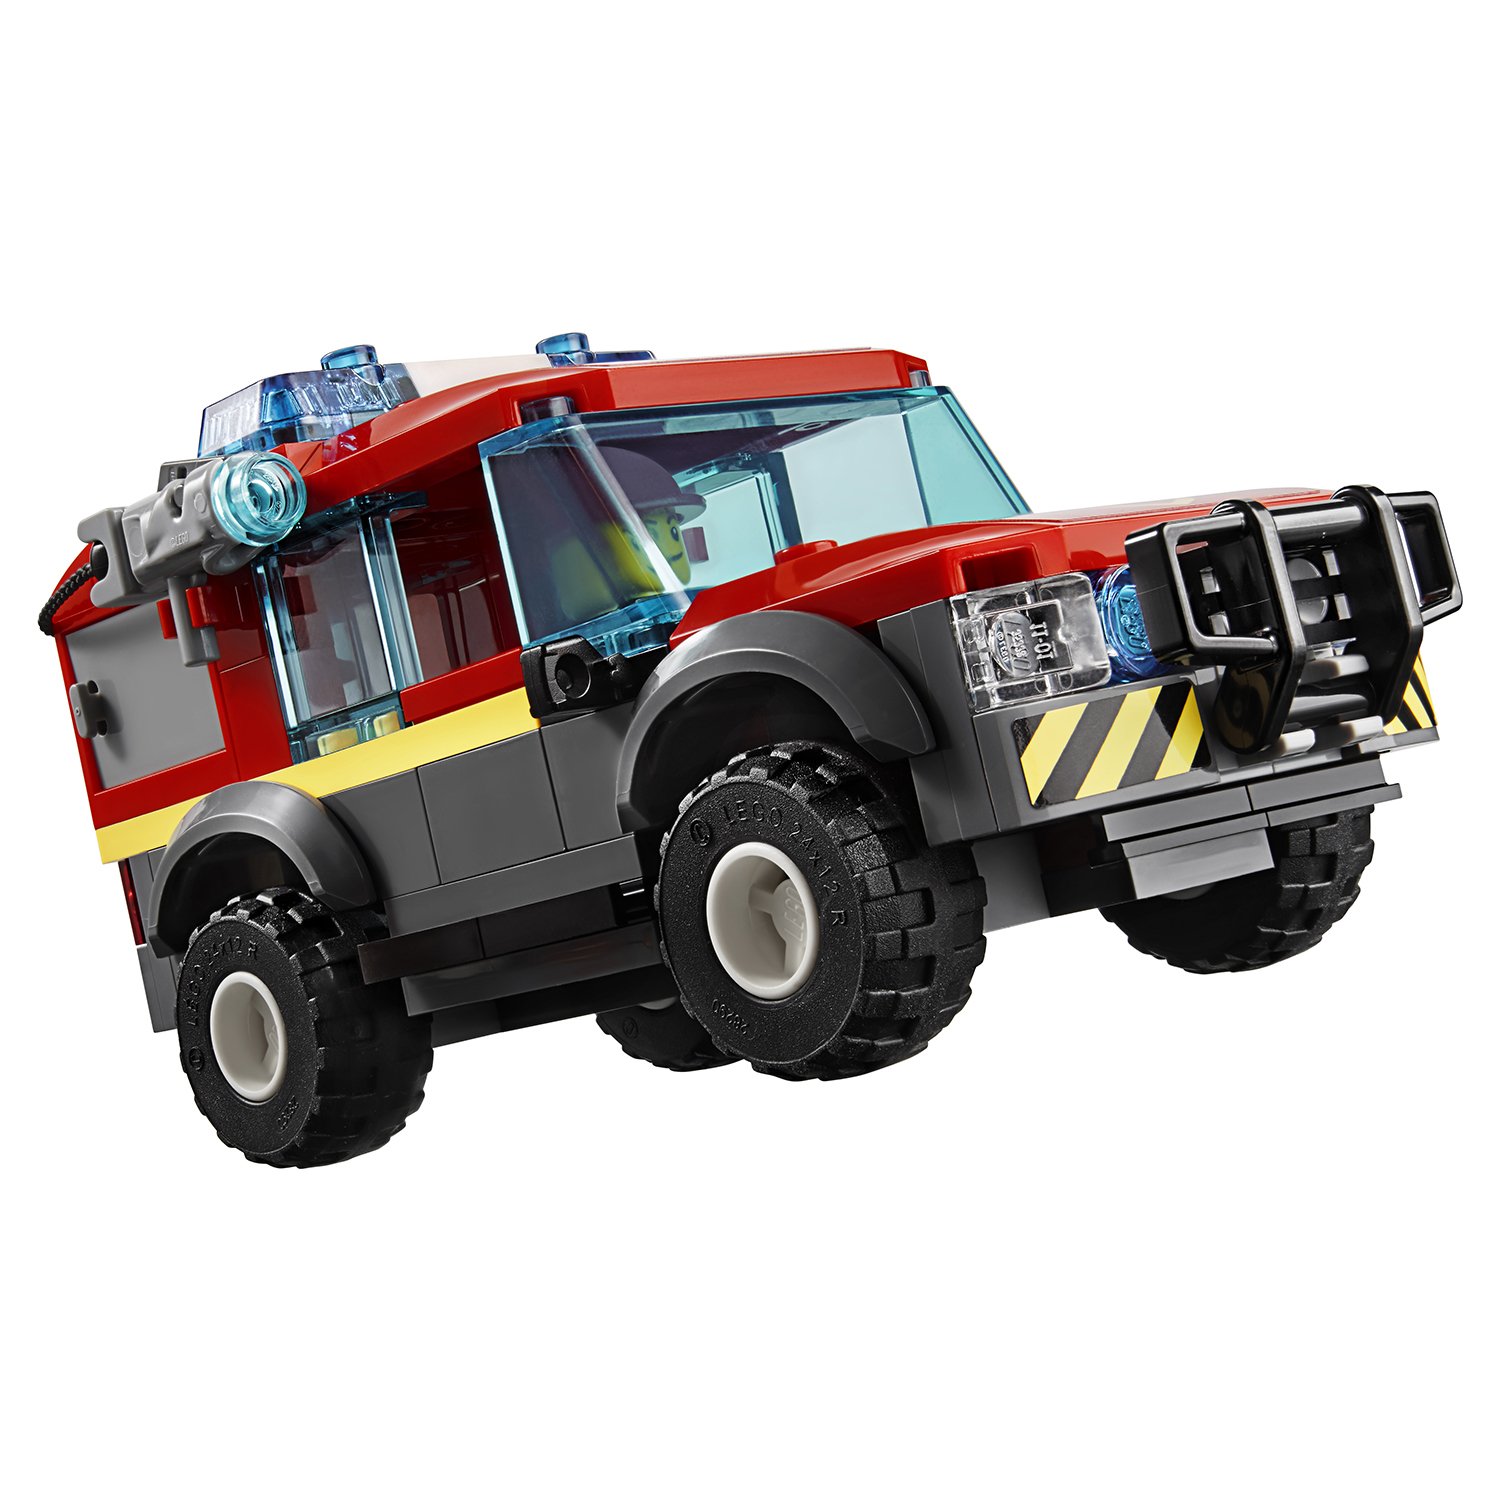 Lego City 60215 Пожарное депо